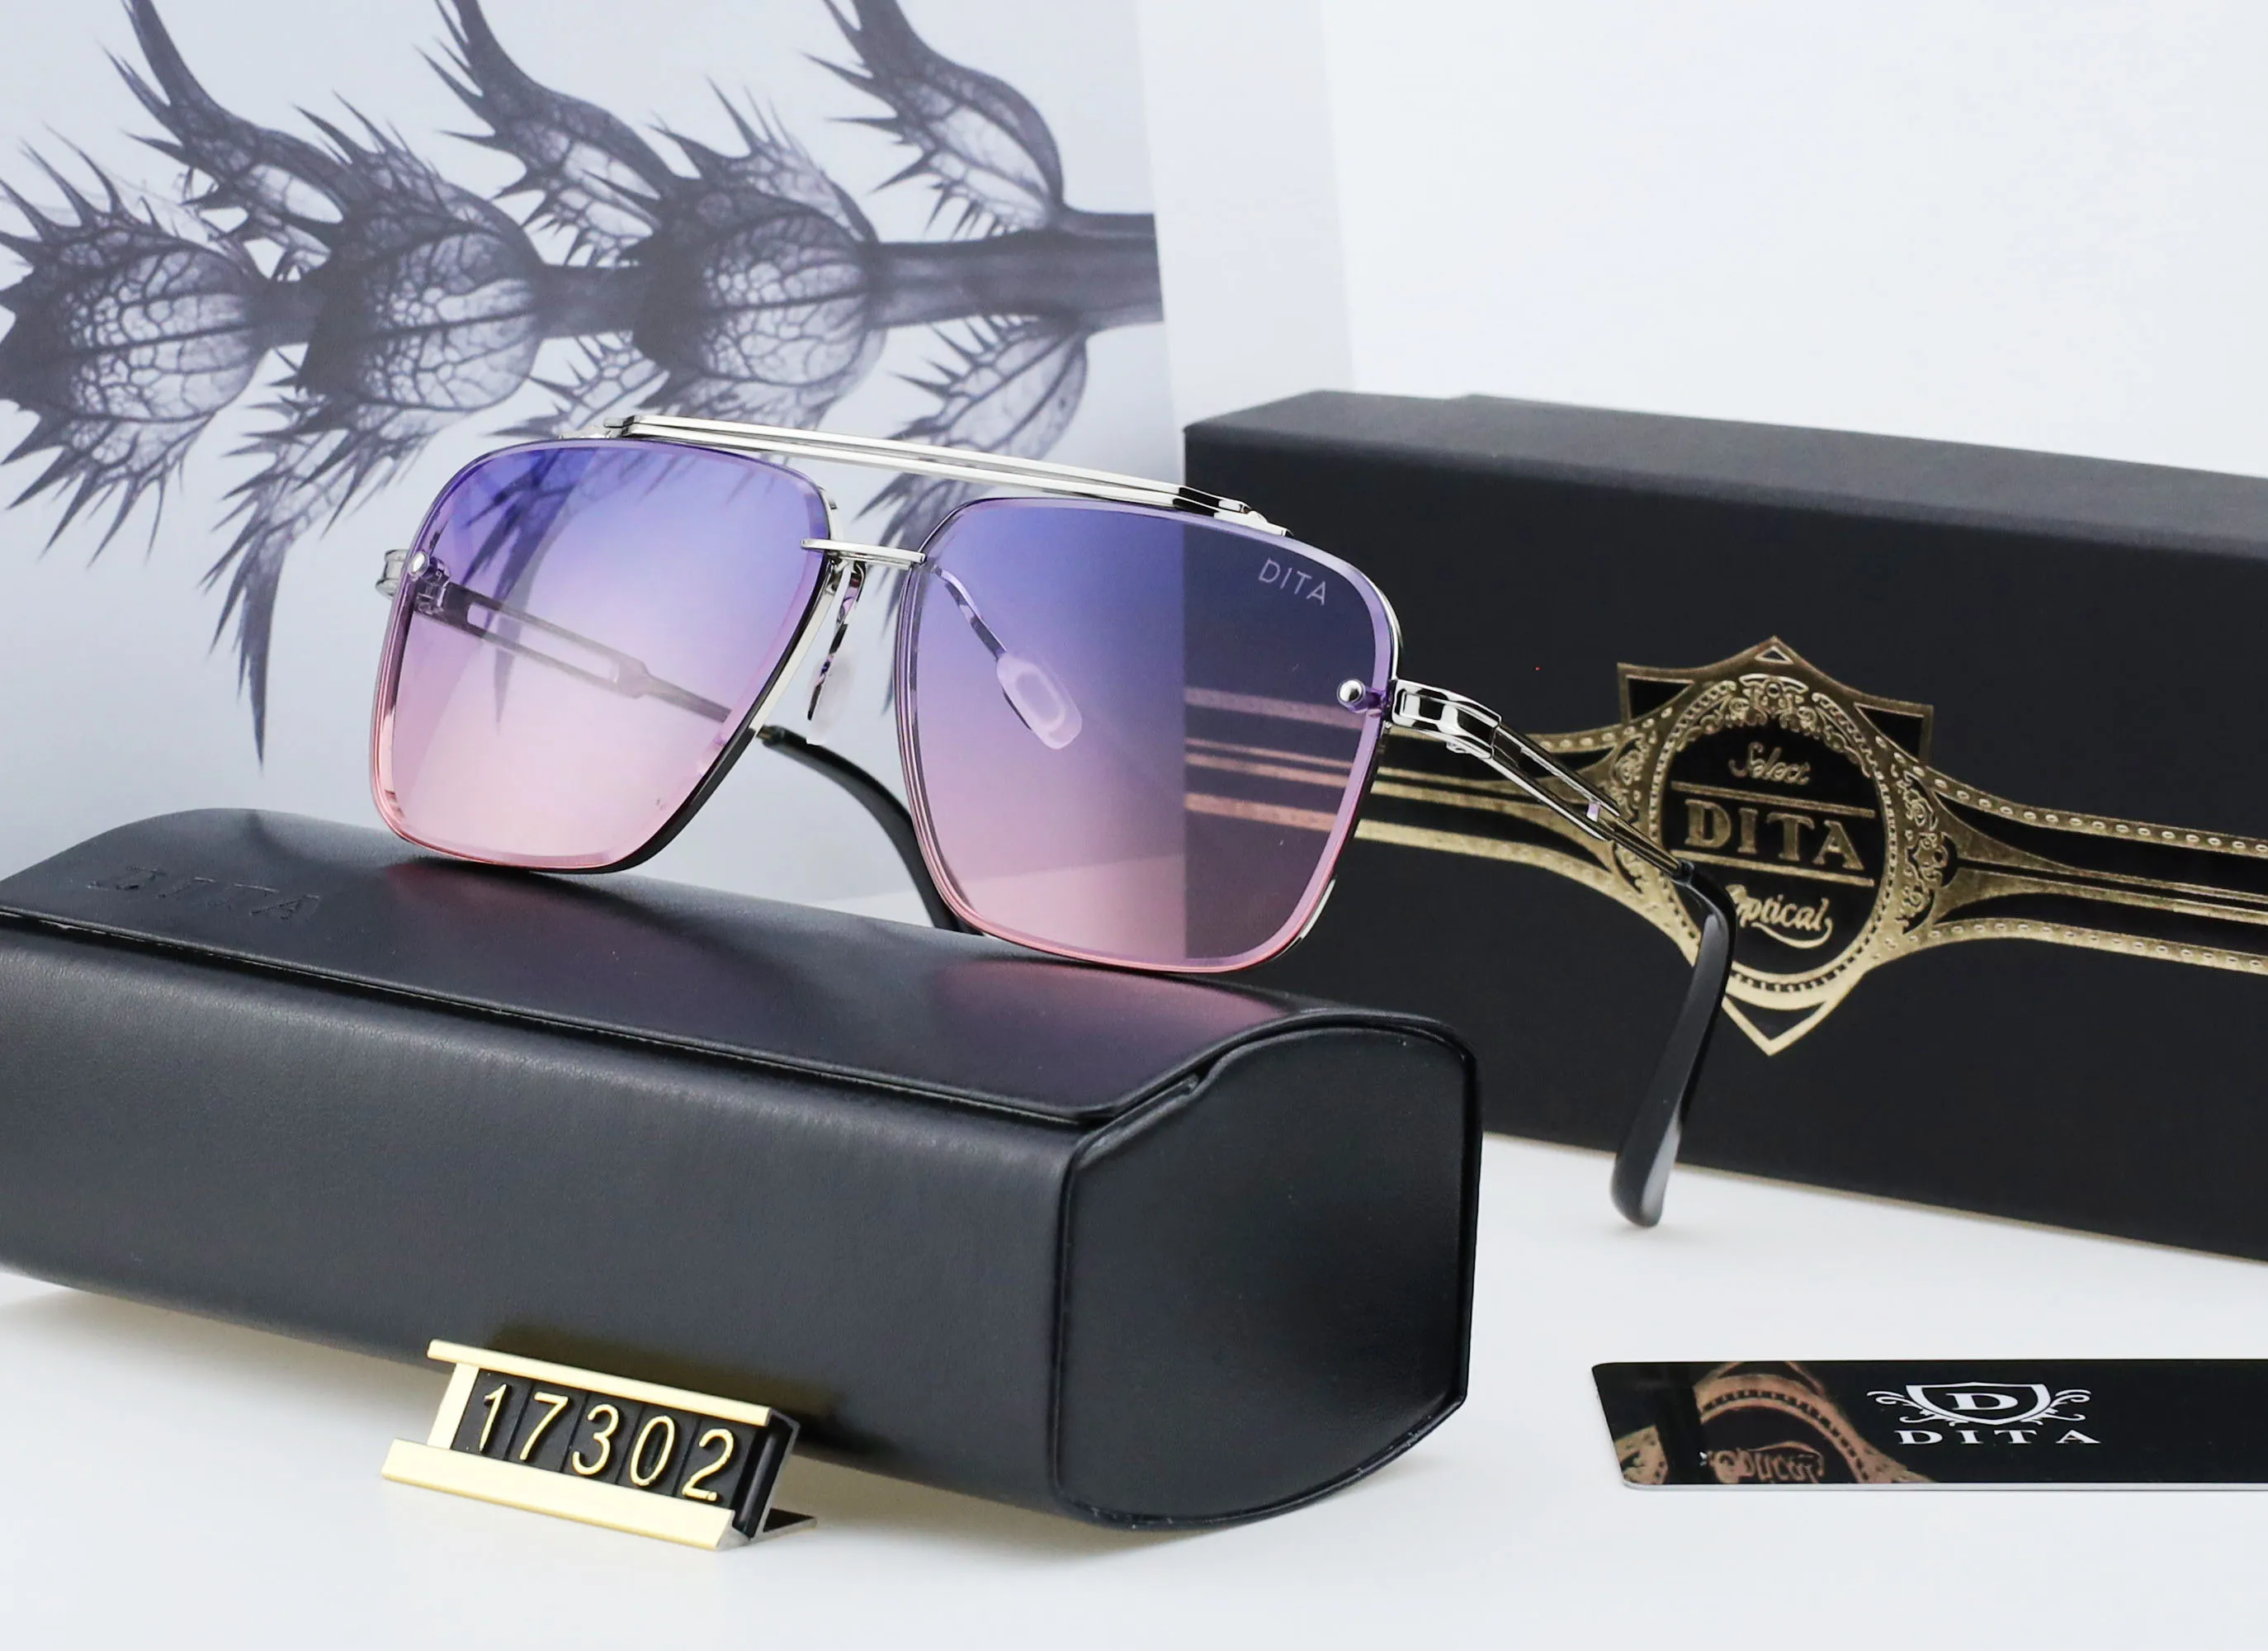 DITA 17302 sunglasses design women sun glasses polarized lens UV400 square frame for men204g